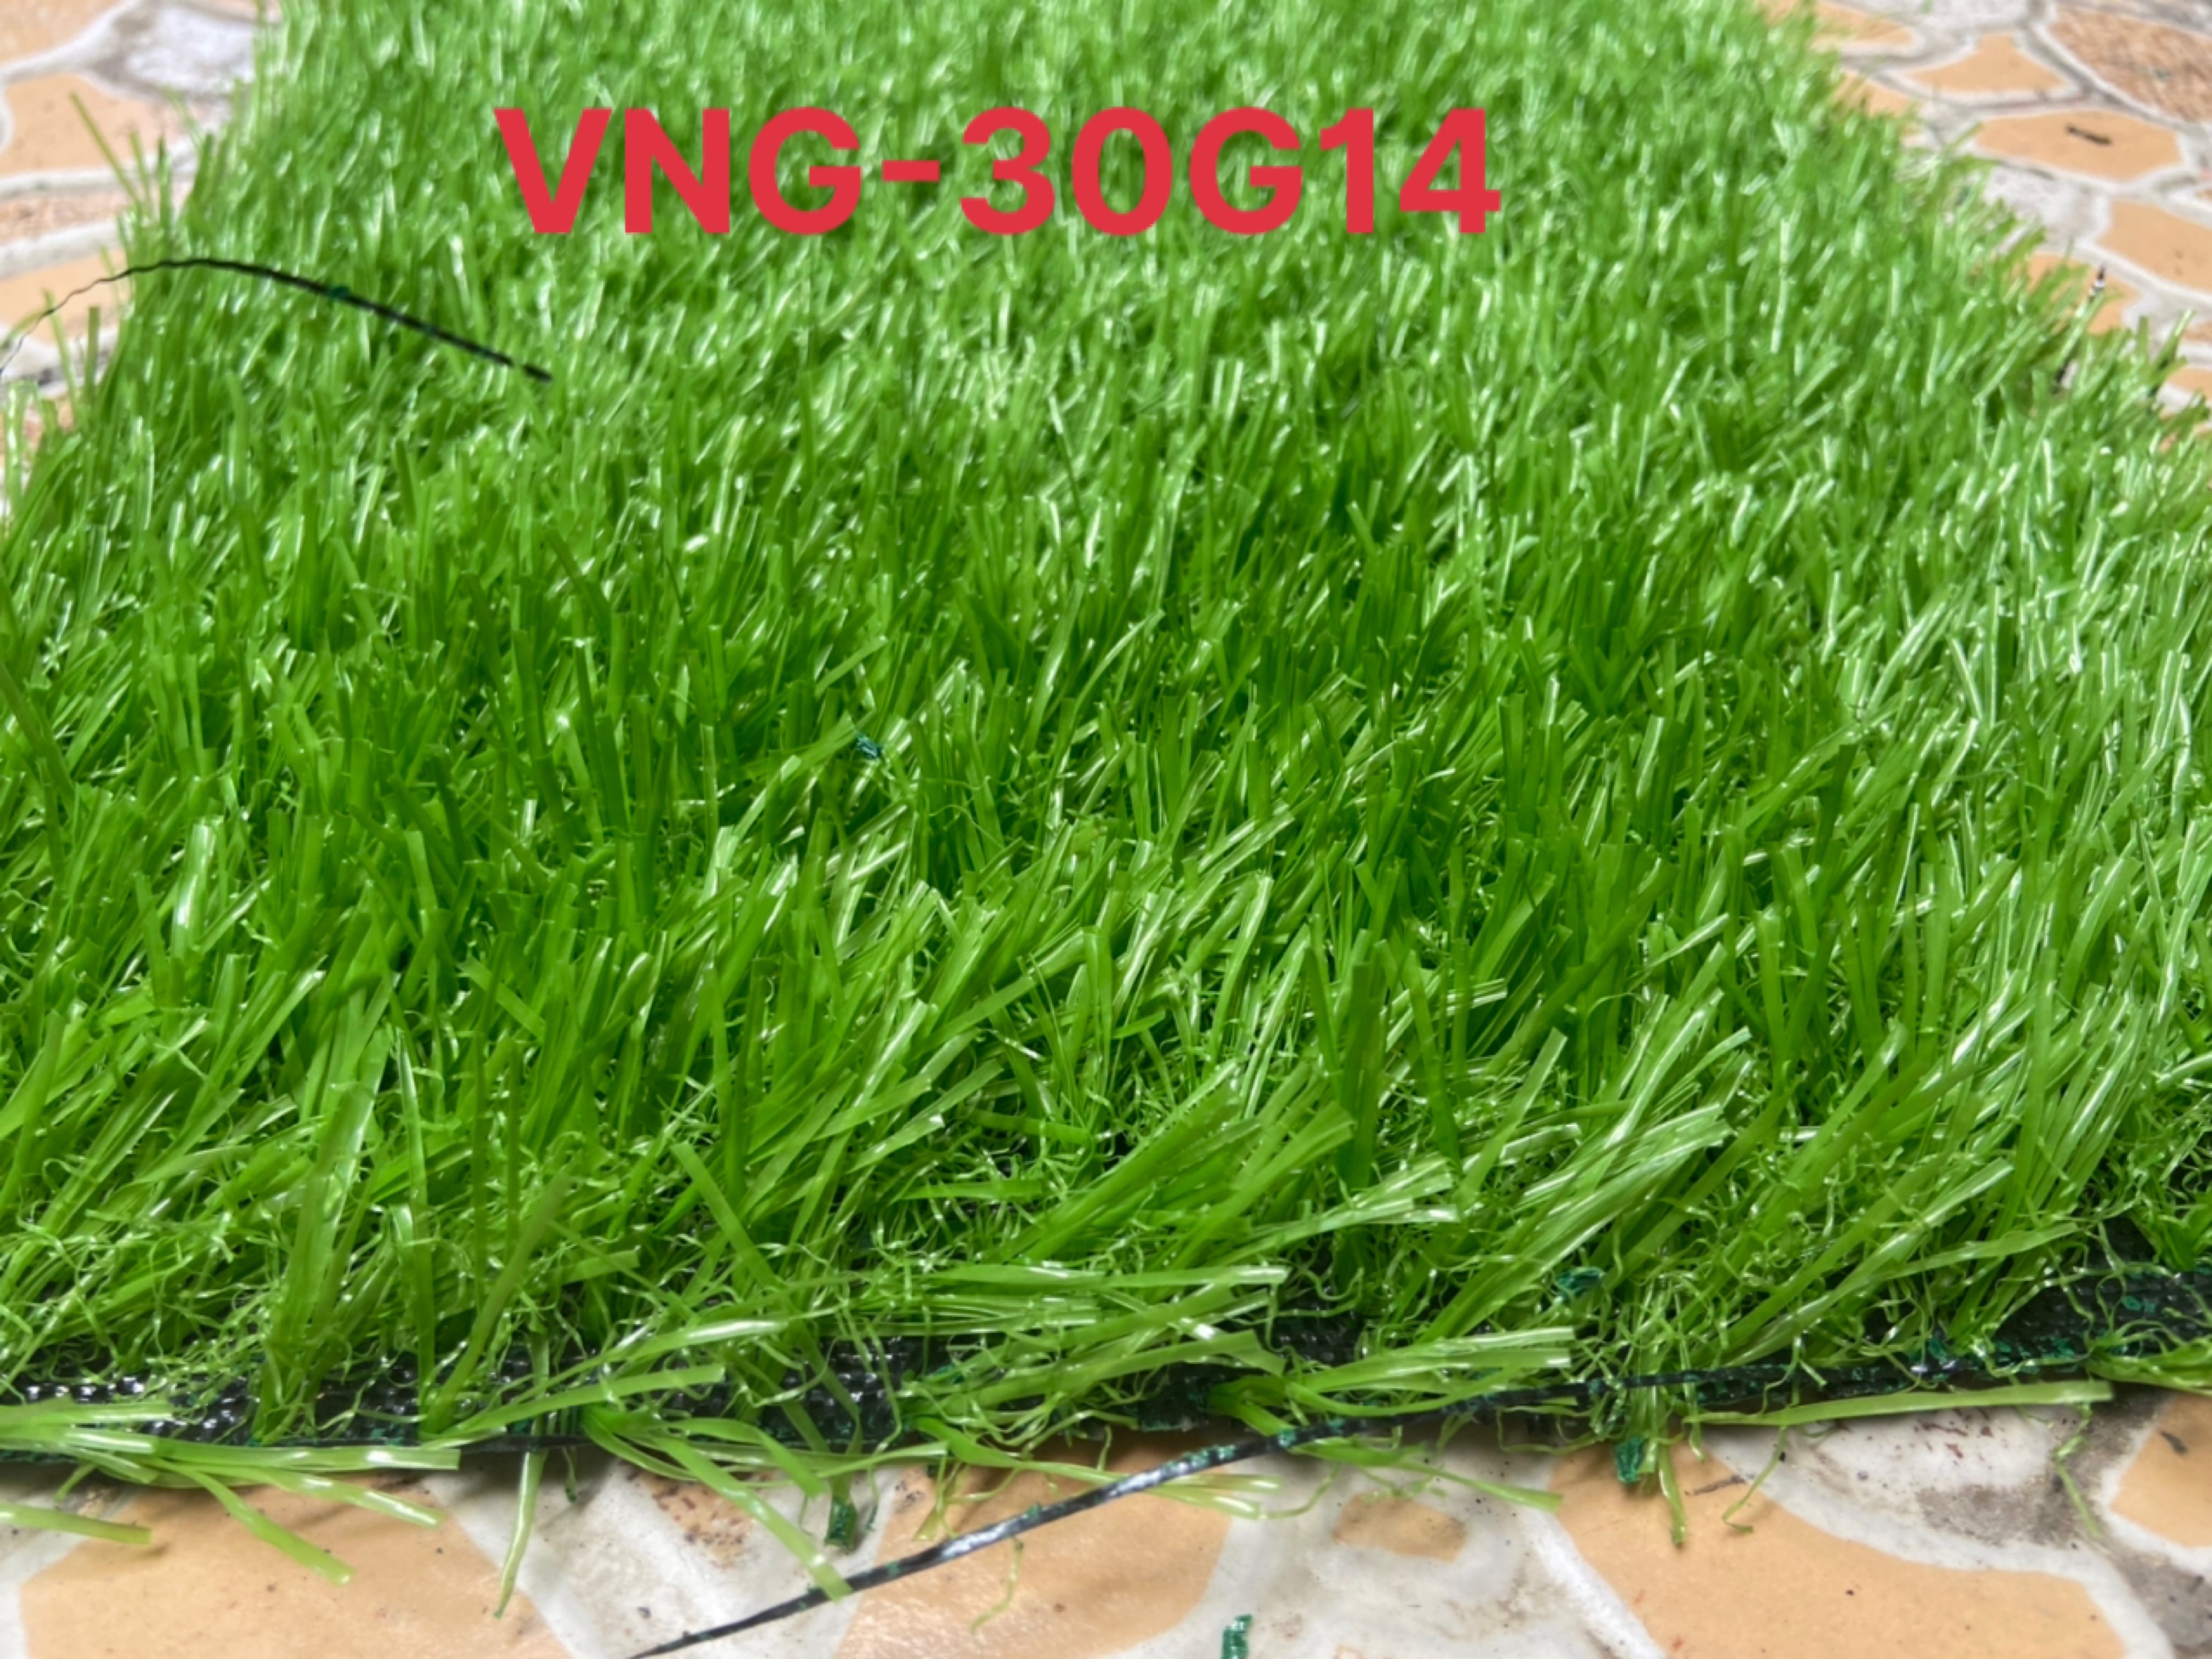 Cỏ nhân tạo 3cm - combo 12m2 (2x6m) cỏ VNG-30G14 màu tươi, đế chịu nước, cỏ chống UV, bền màu